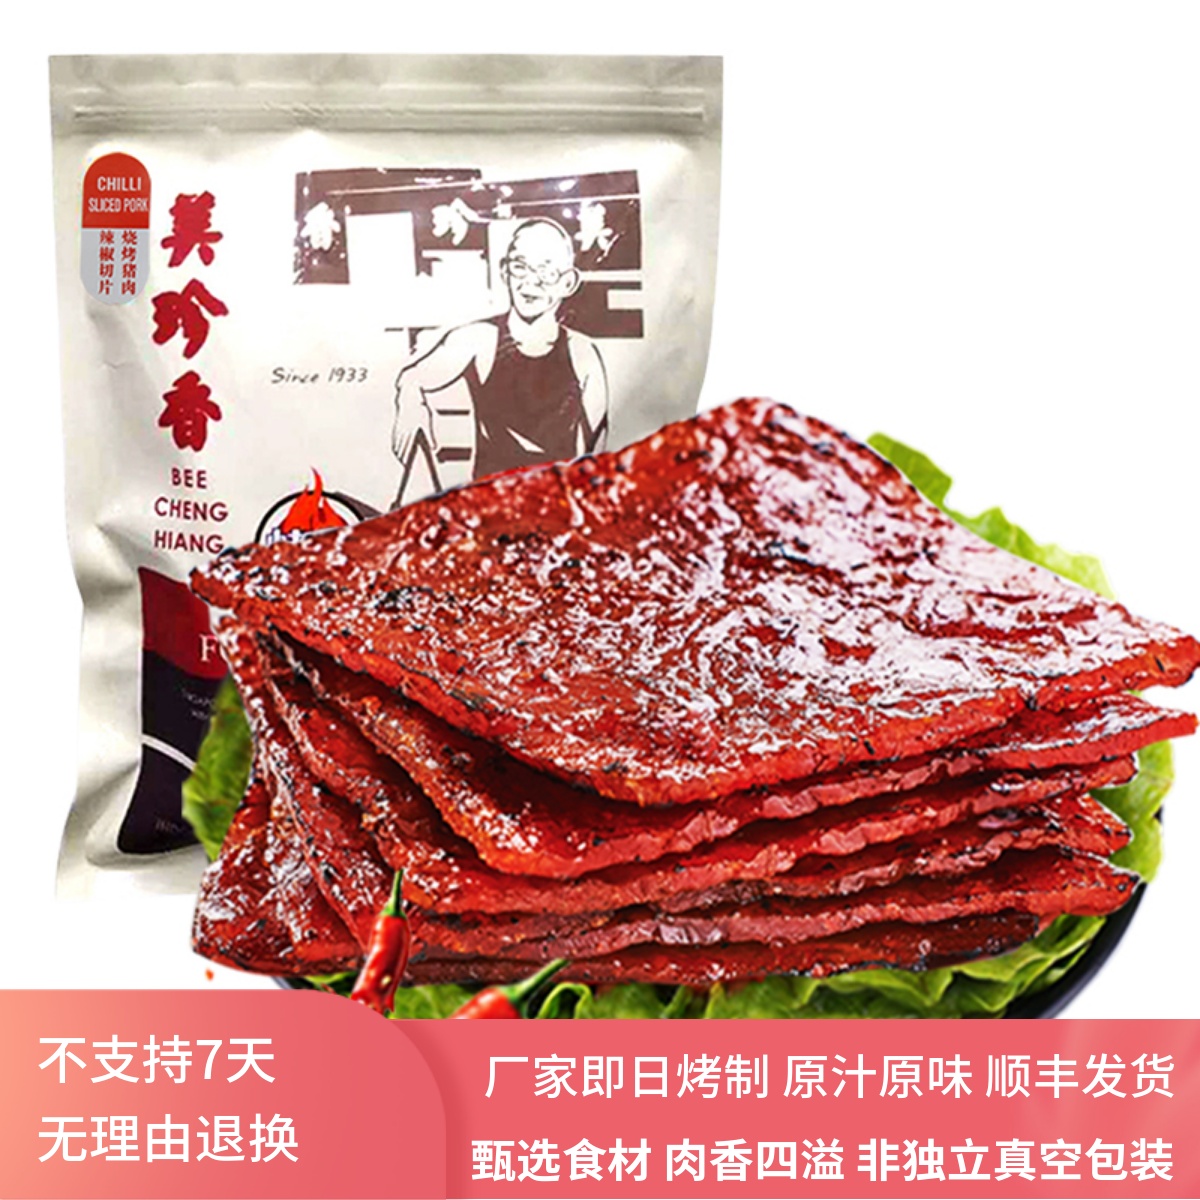 美珍香辣椒切片烧烤猪肉250g非真空包装炭烤肉类零食小吃休闲食品